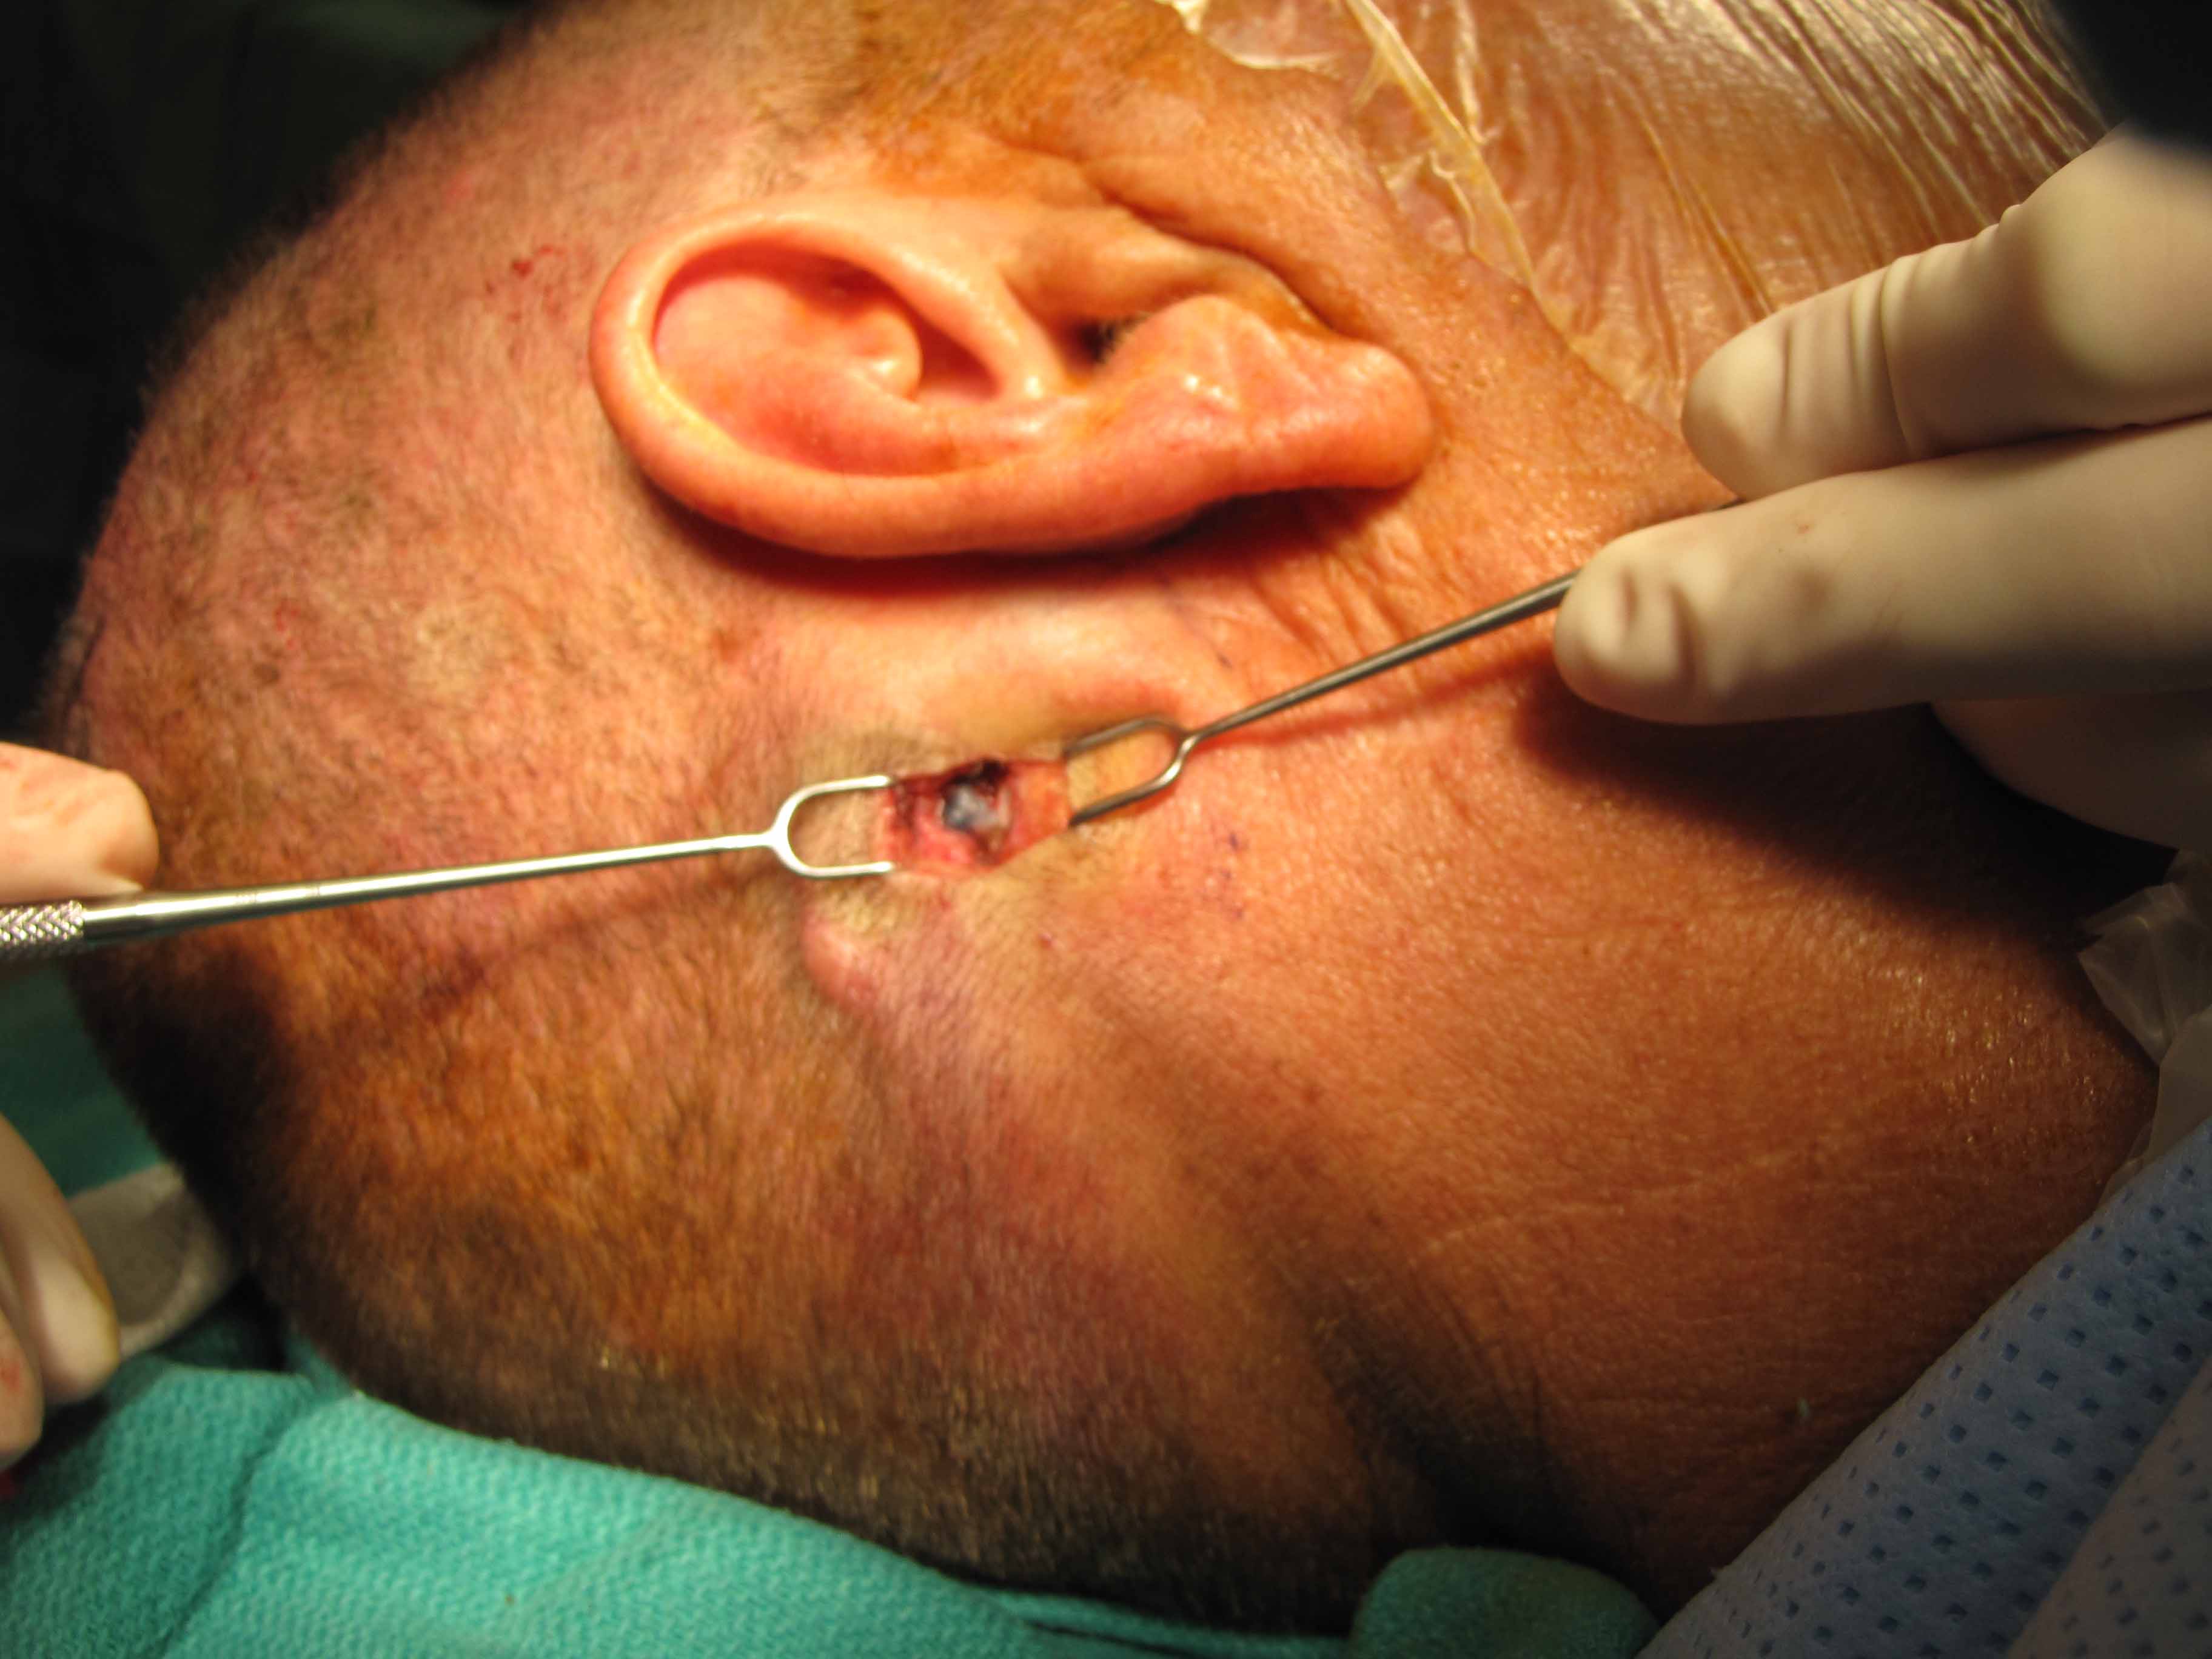 lymph nodes behind ear